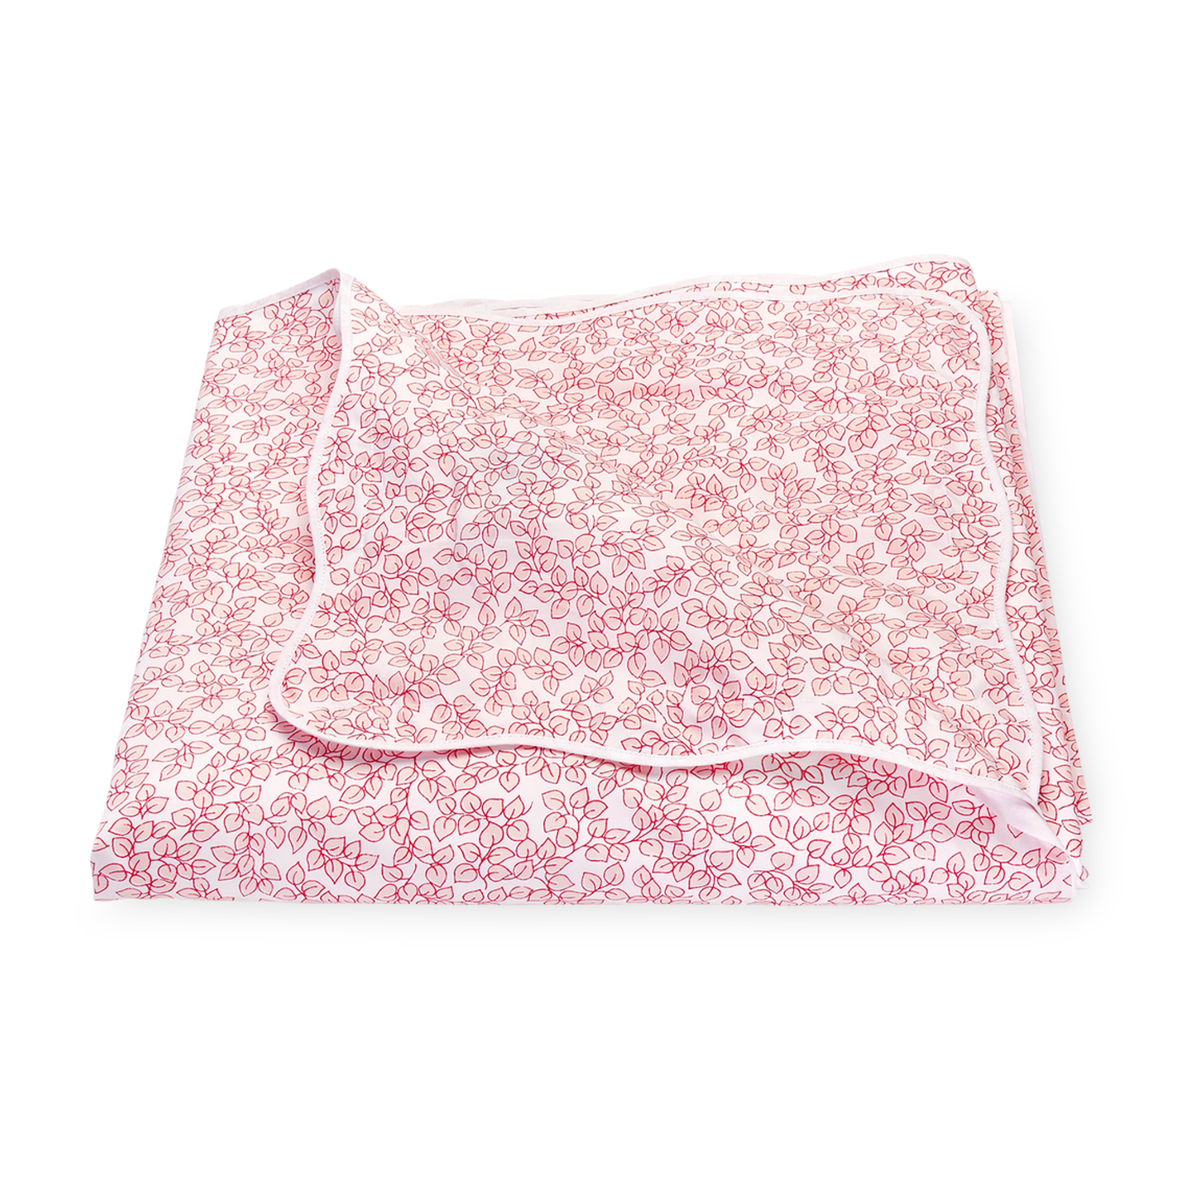 Folded Duvet Cover of Matouk Margot Bedding in Blush Color